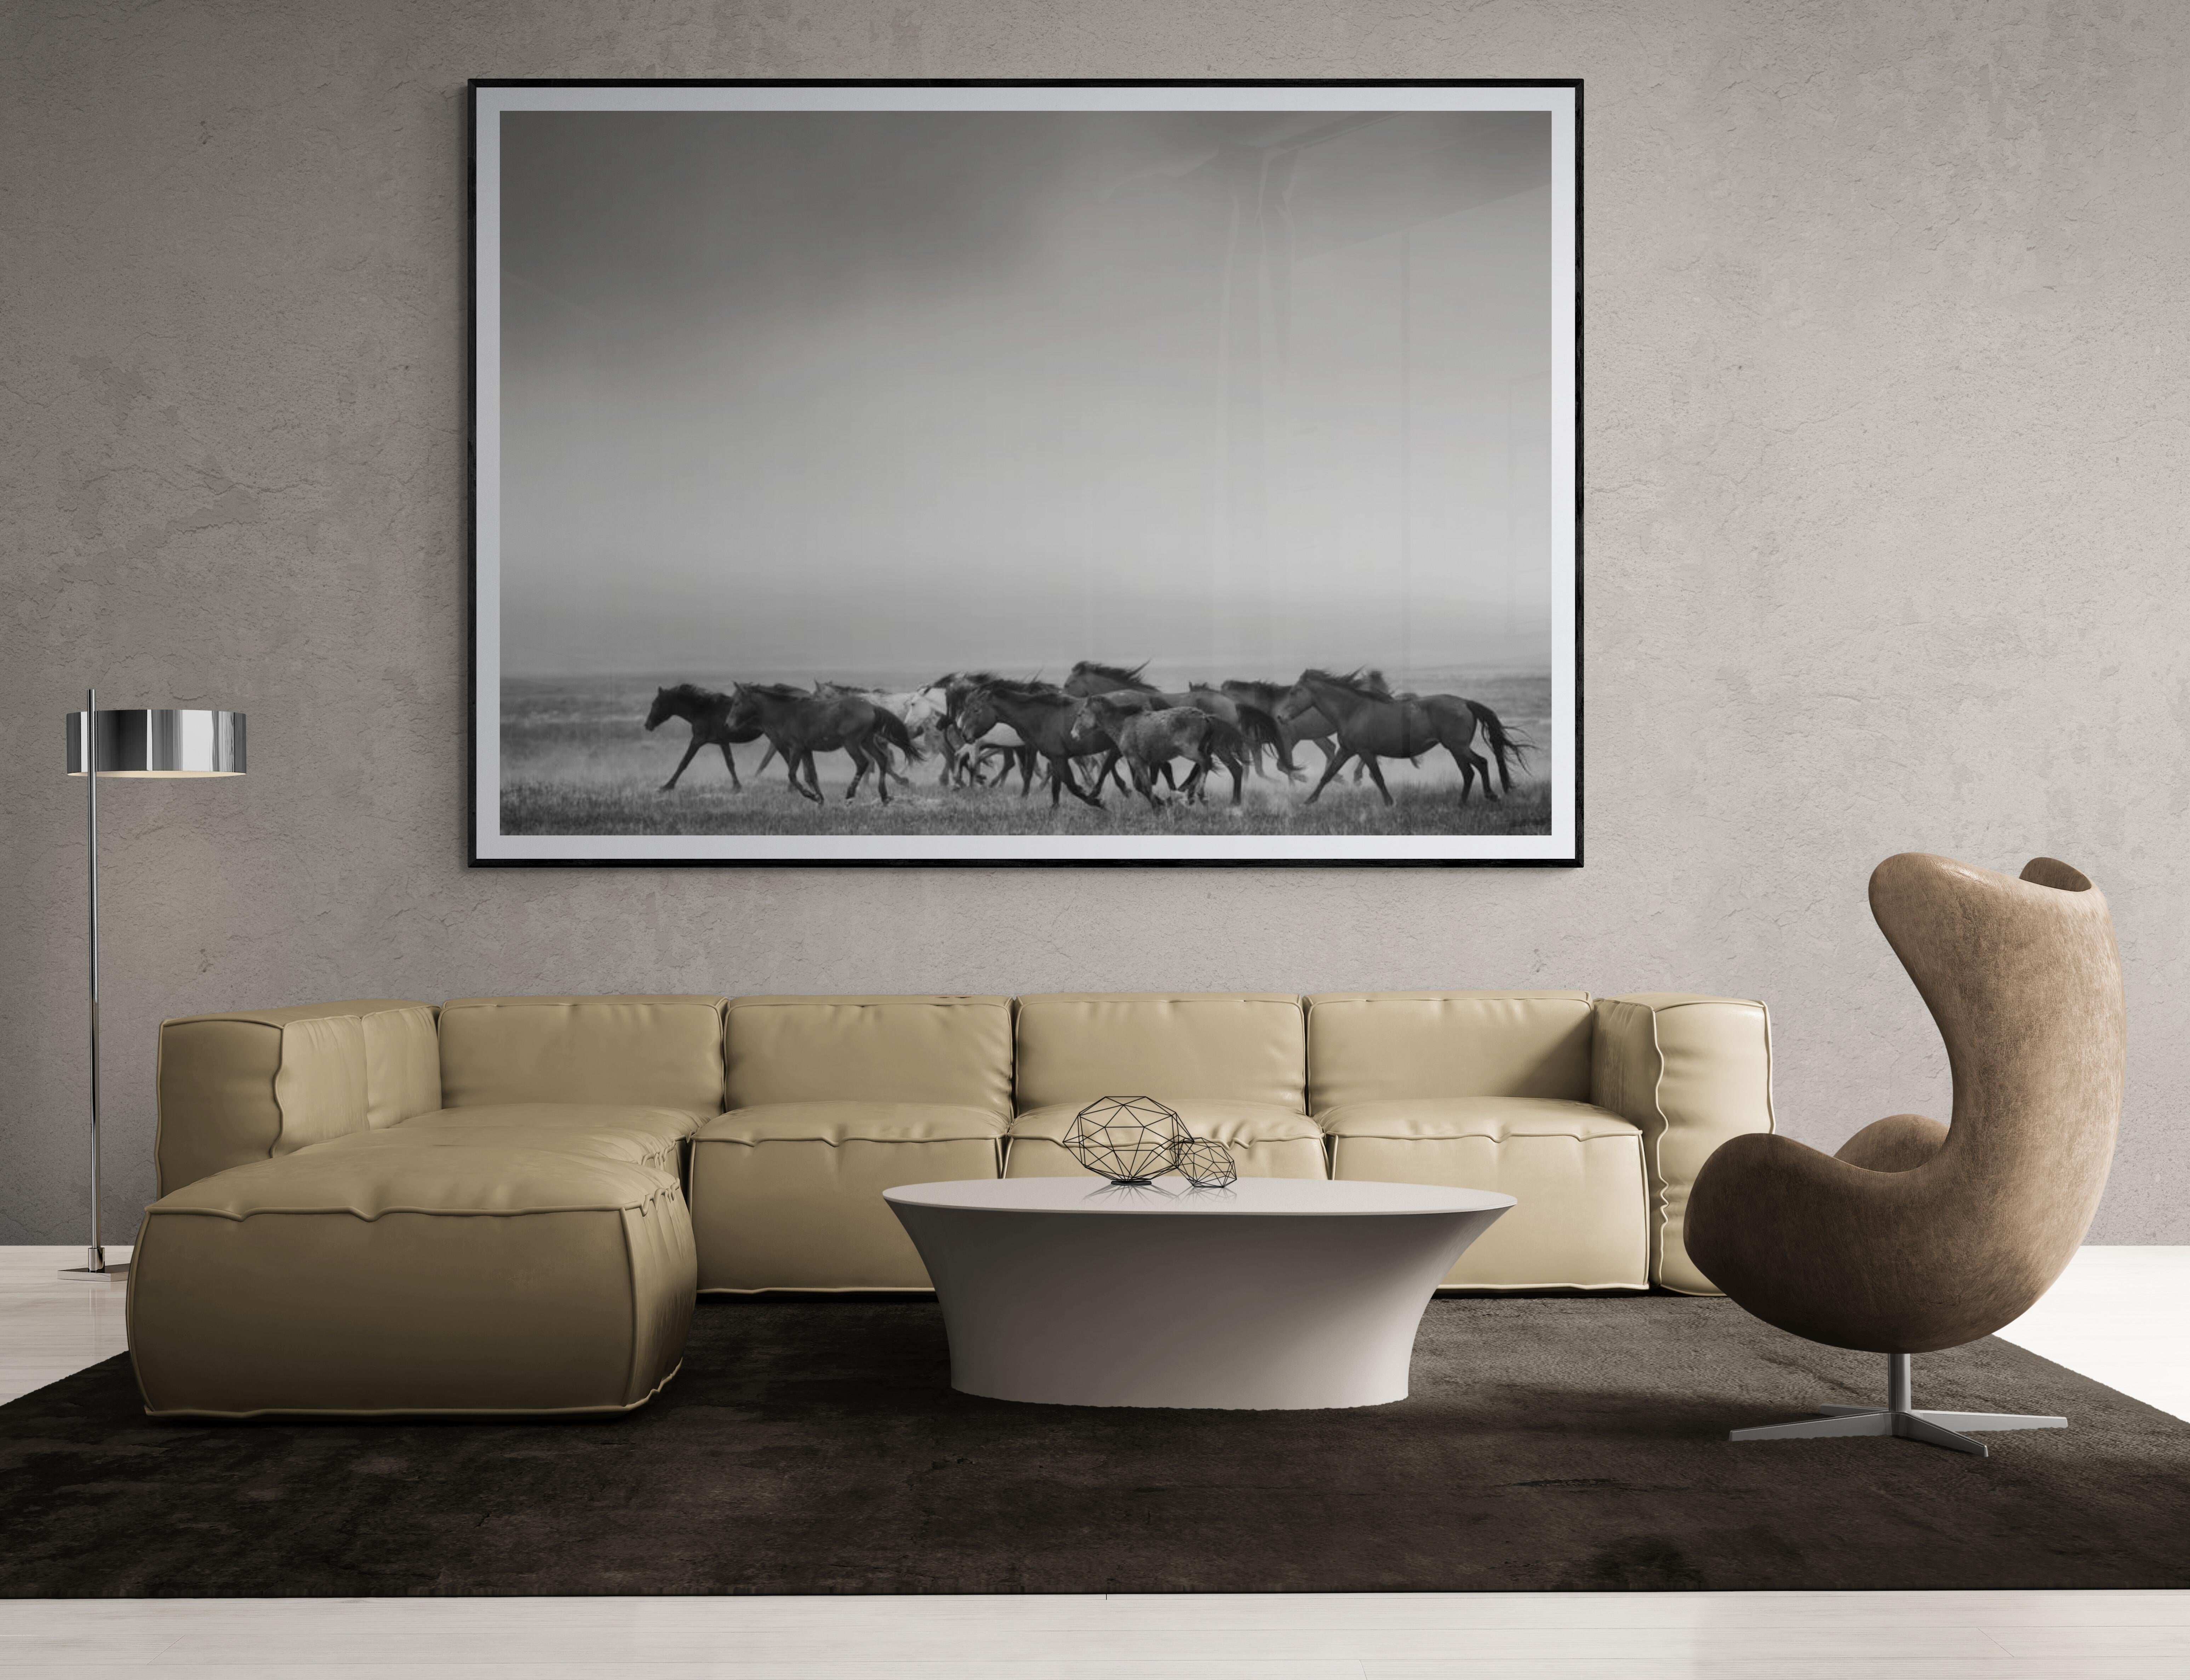 Dies ist ein Schwarz-Weiß-Foto der American Wild Mustangs von Shane Russeck. 
Gedruckt auf Archivpapier mit Archivtinte
40x50
Auflage von 10 Stück 
Signiert und nummeriert

 Shane Russeck hat sich den Ruf erworben, Amerikas Landschaften, Kulturen